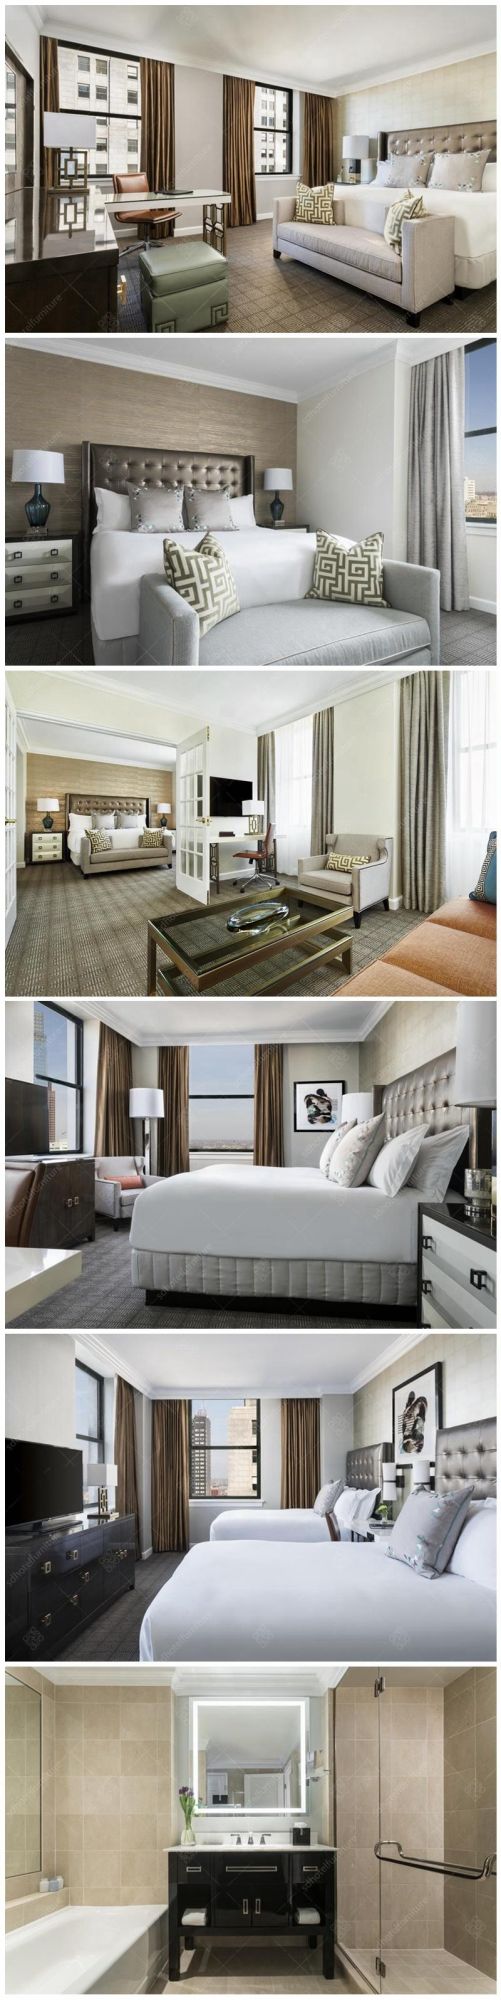 Modern 5 Stars Hotel Bedroom Furniture Sets Commercial Furniture Sets for Sale